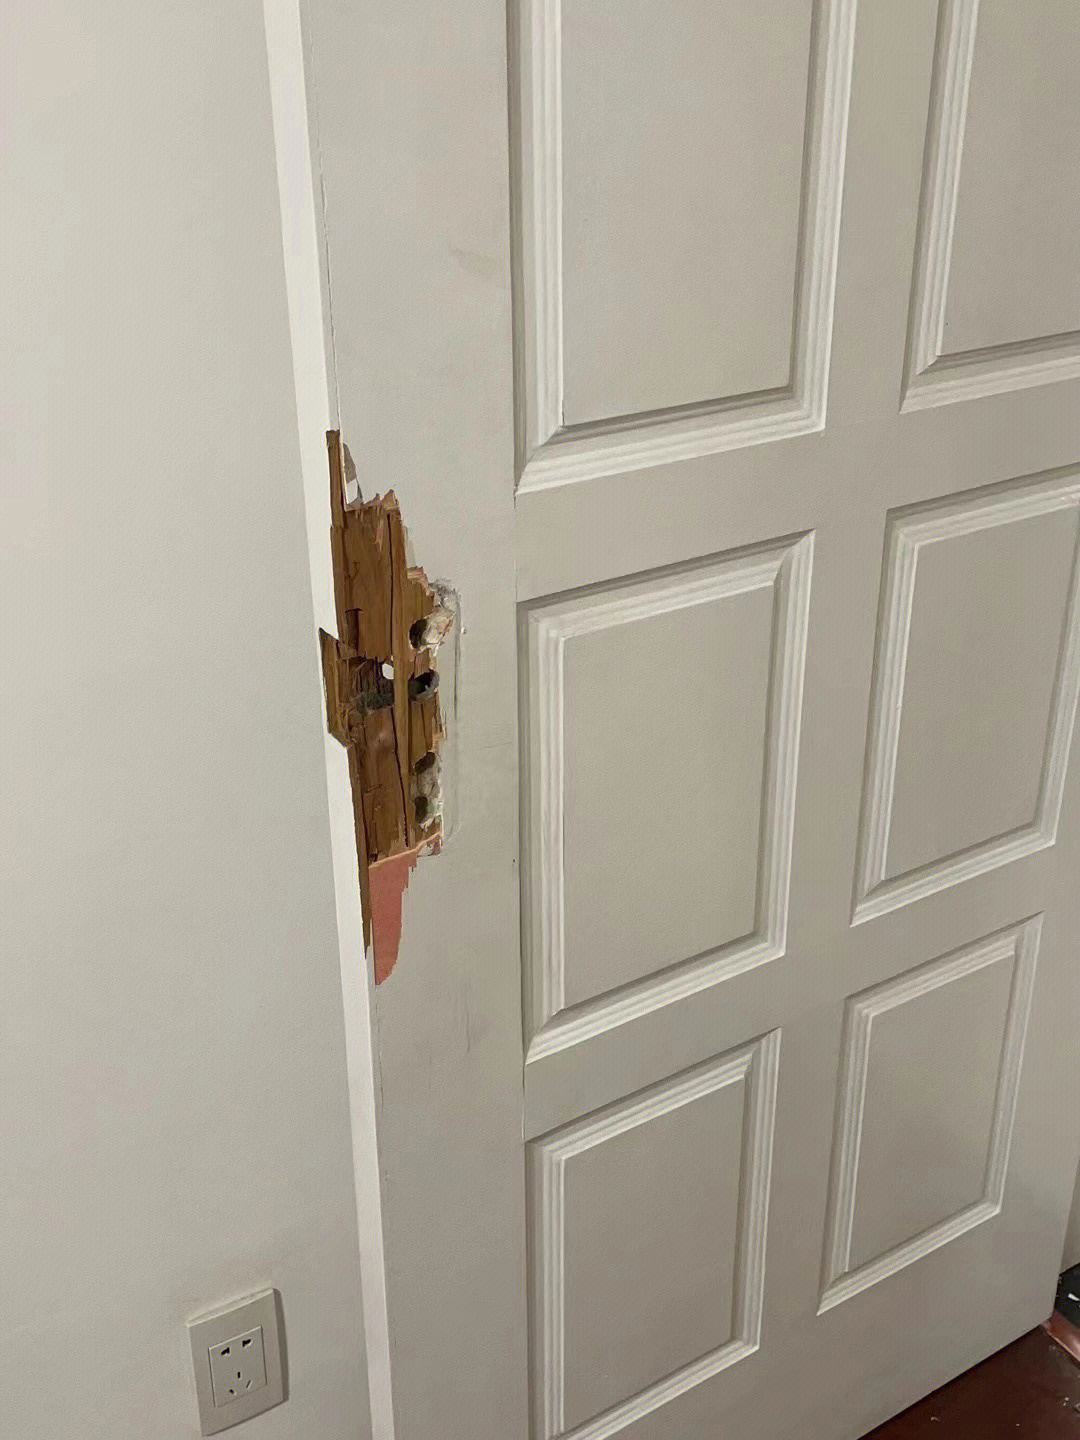 小朋友被锁在屋里打不开,不得已踢坏了门坏了以后决定暂时不装门锁了